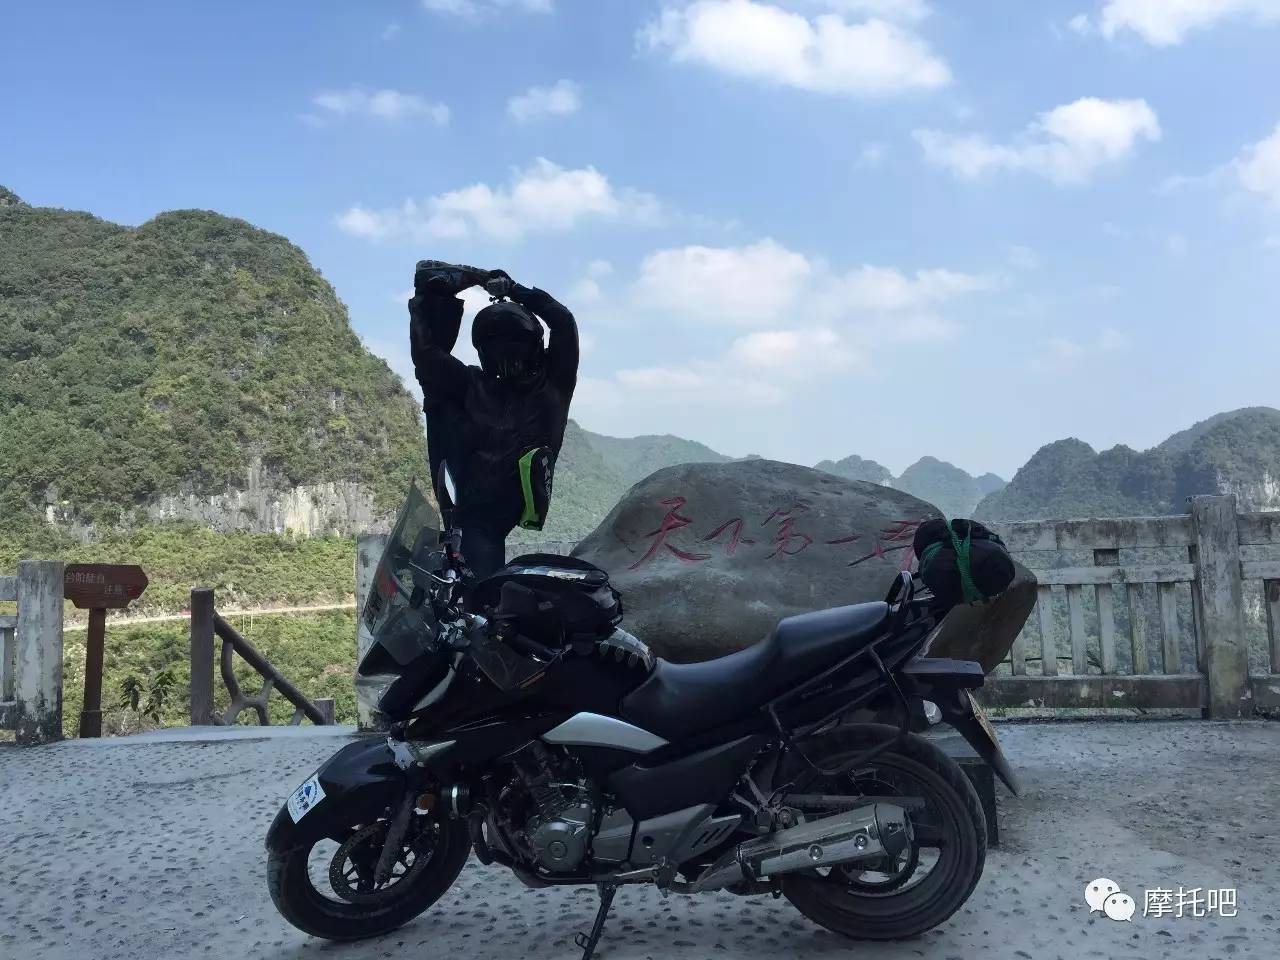                     这位车友骑着摩托车用一字马劈遍全世界，证明自己来过！